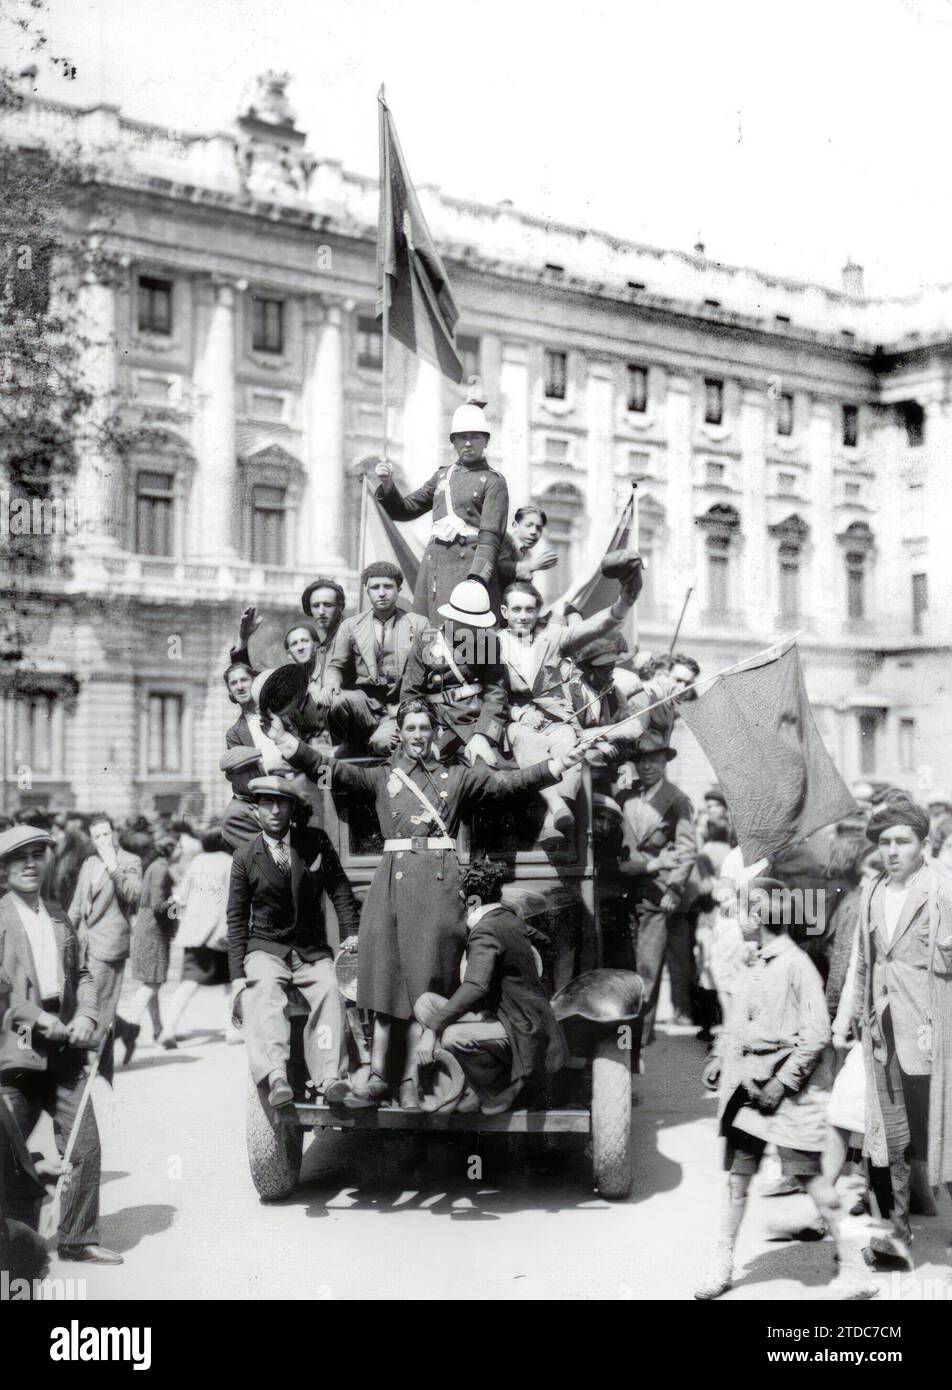 04/13/1931. Gruppen von Republikanern kommen am Oriente-Palast vorbei. Das lange Exil der spanischen Königsfamilie wird beginnen. Quelle: Album / Archivo ABC / Alfonso Sánchez García Alfonso Stockfoto